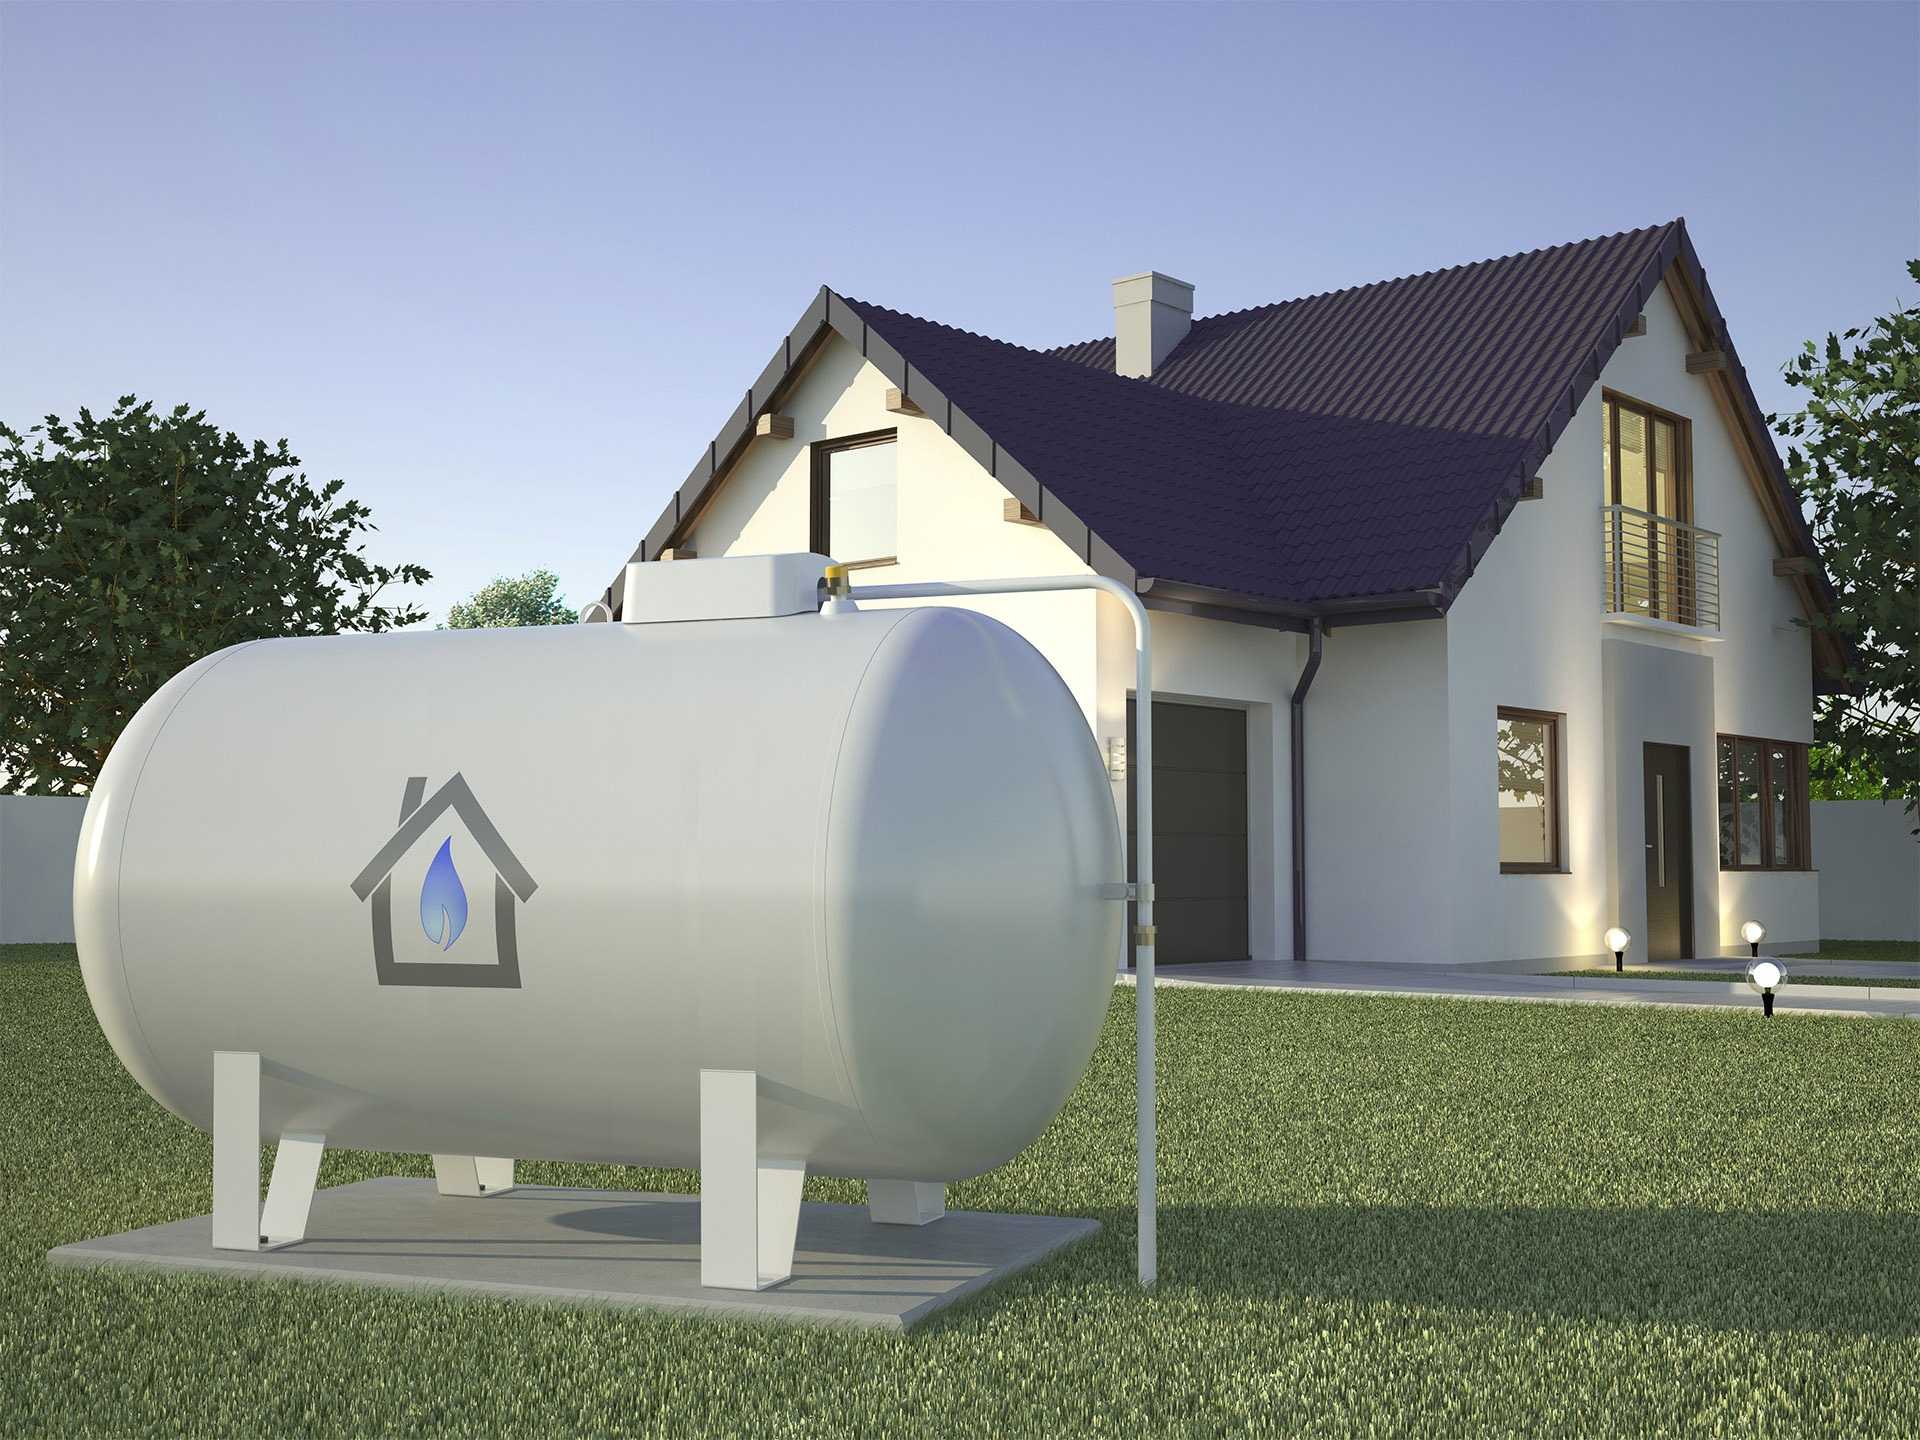 Разбираемся чем выгоднее отапливать дом? газгольдером или газовыми баллонами? - дизайн для дома